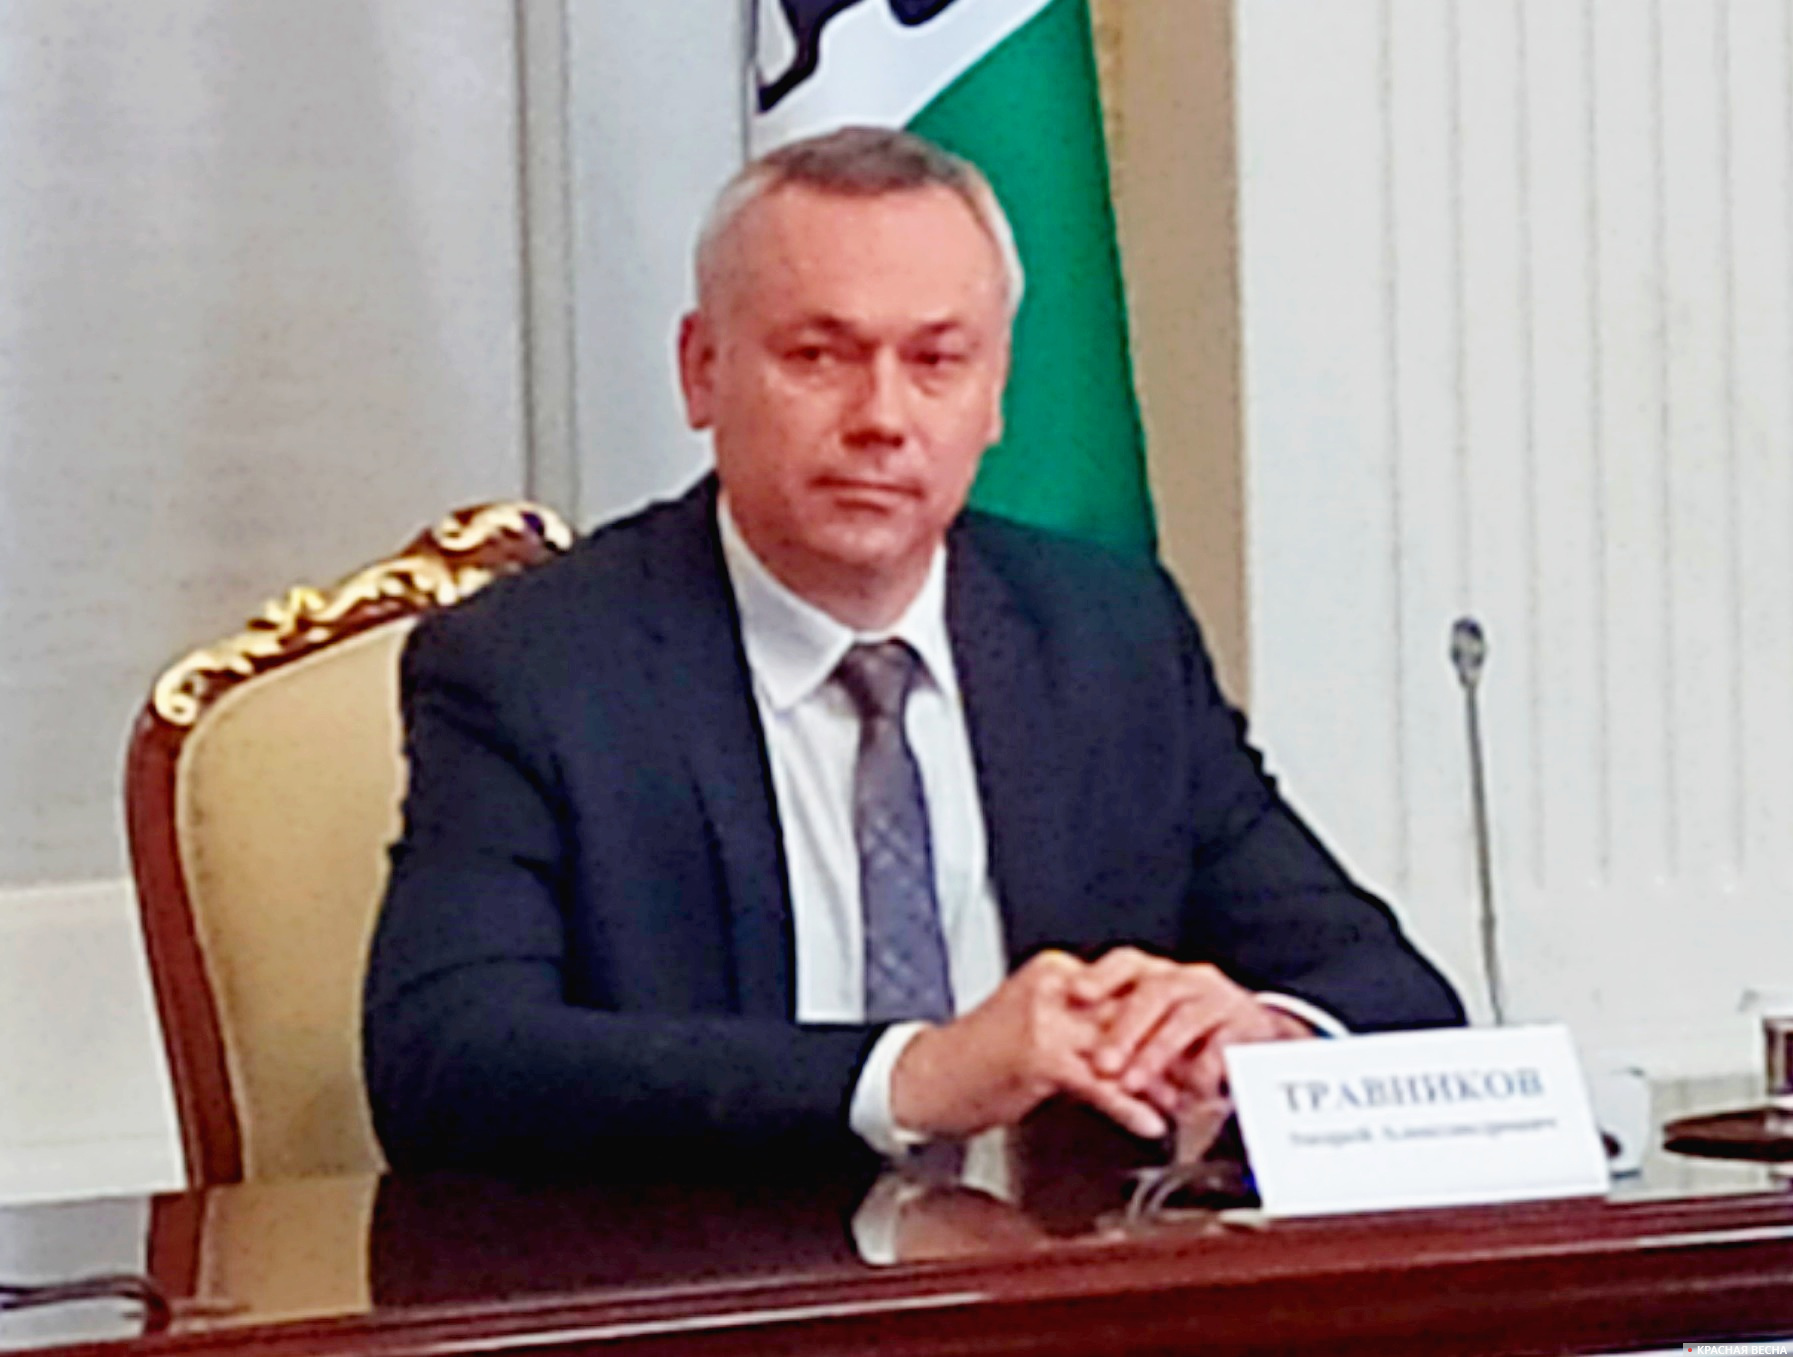 Губернатор Новосибирской области Андрей Травников